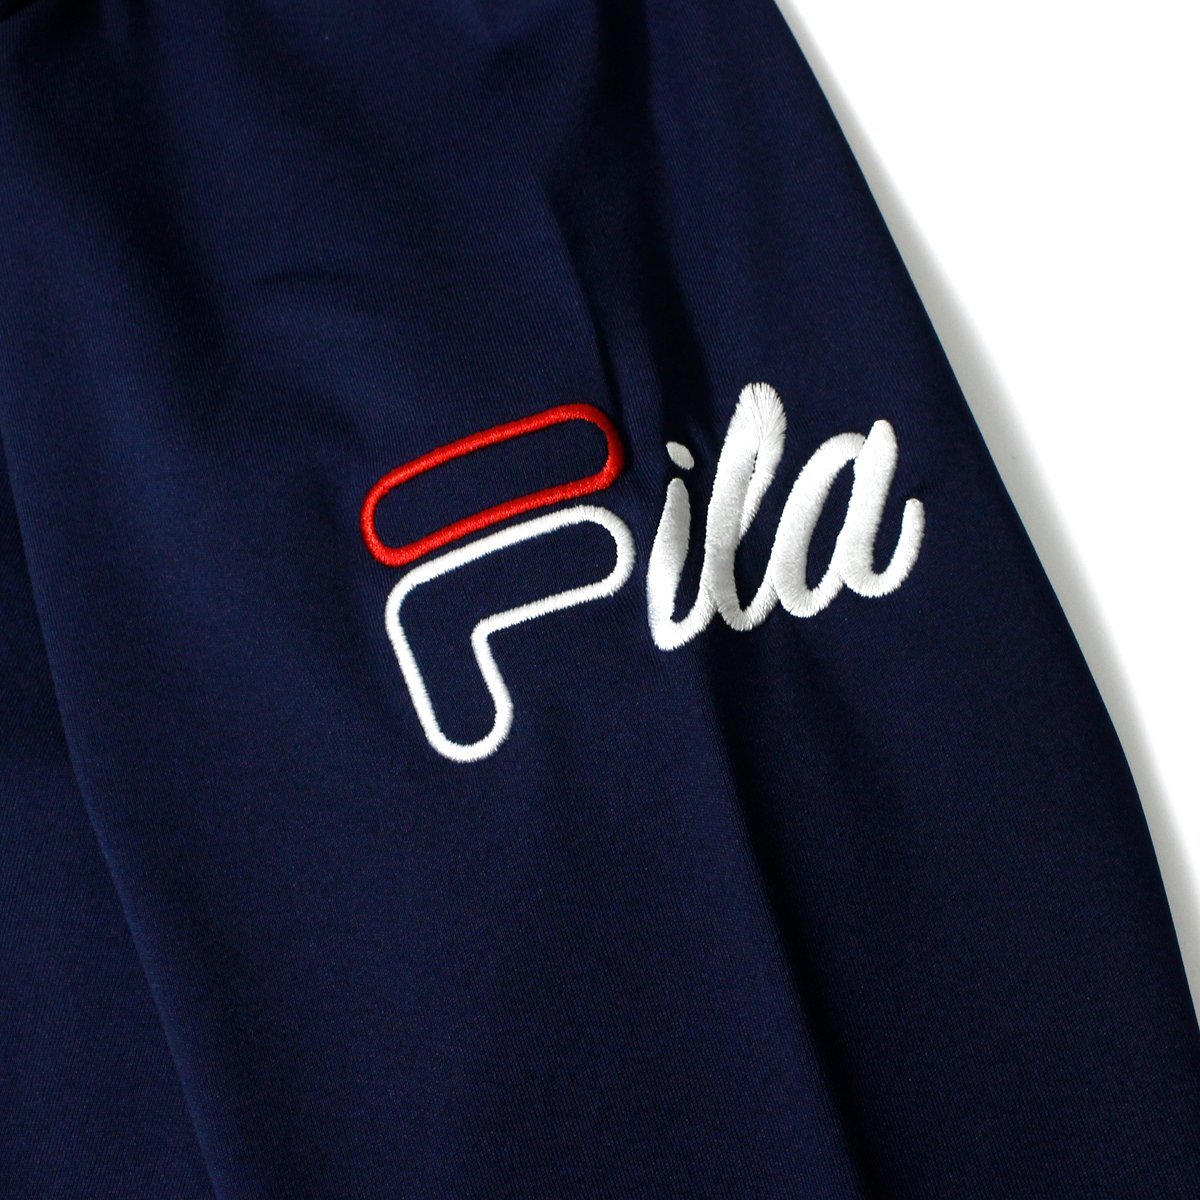  новый товар FILA GOLF контакт охлаждающий mok шея гладкий рубашка с длинным рукавом LL темно-синий filler Golf . пот скорость .UV cut Golf одежда мужской весна лето *CC2194B